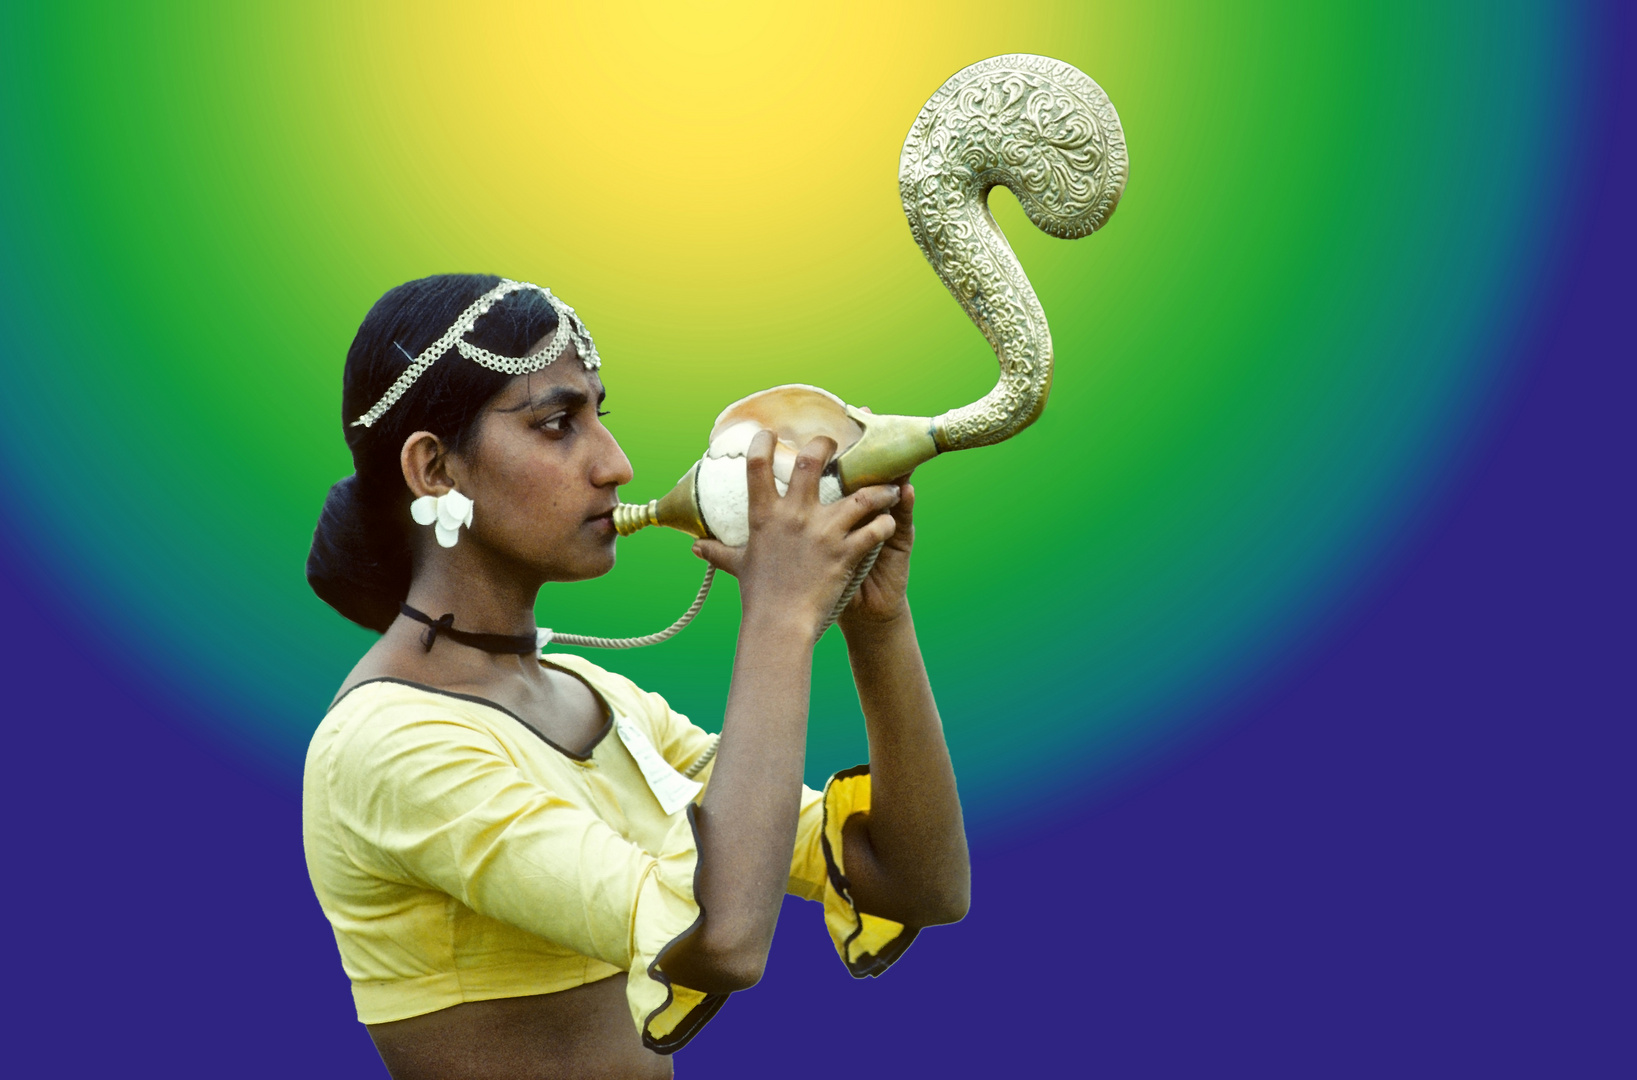 Musikantin unterwegs in Sri Lanka